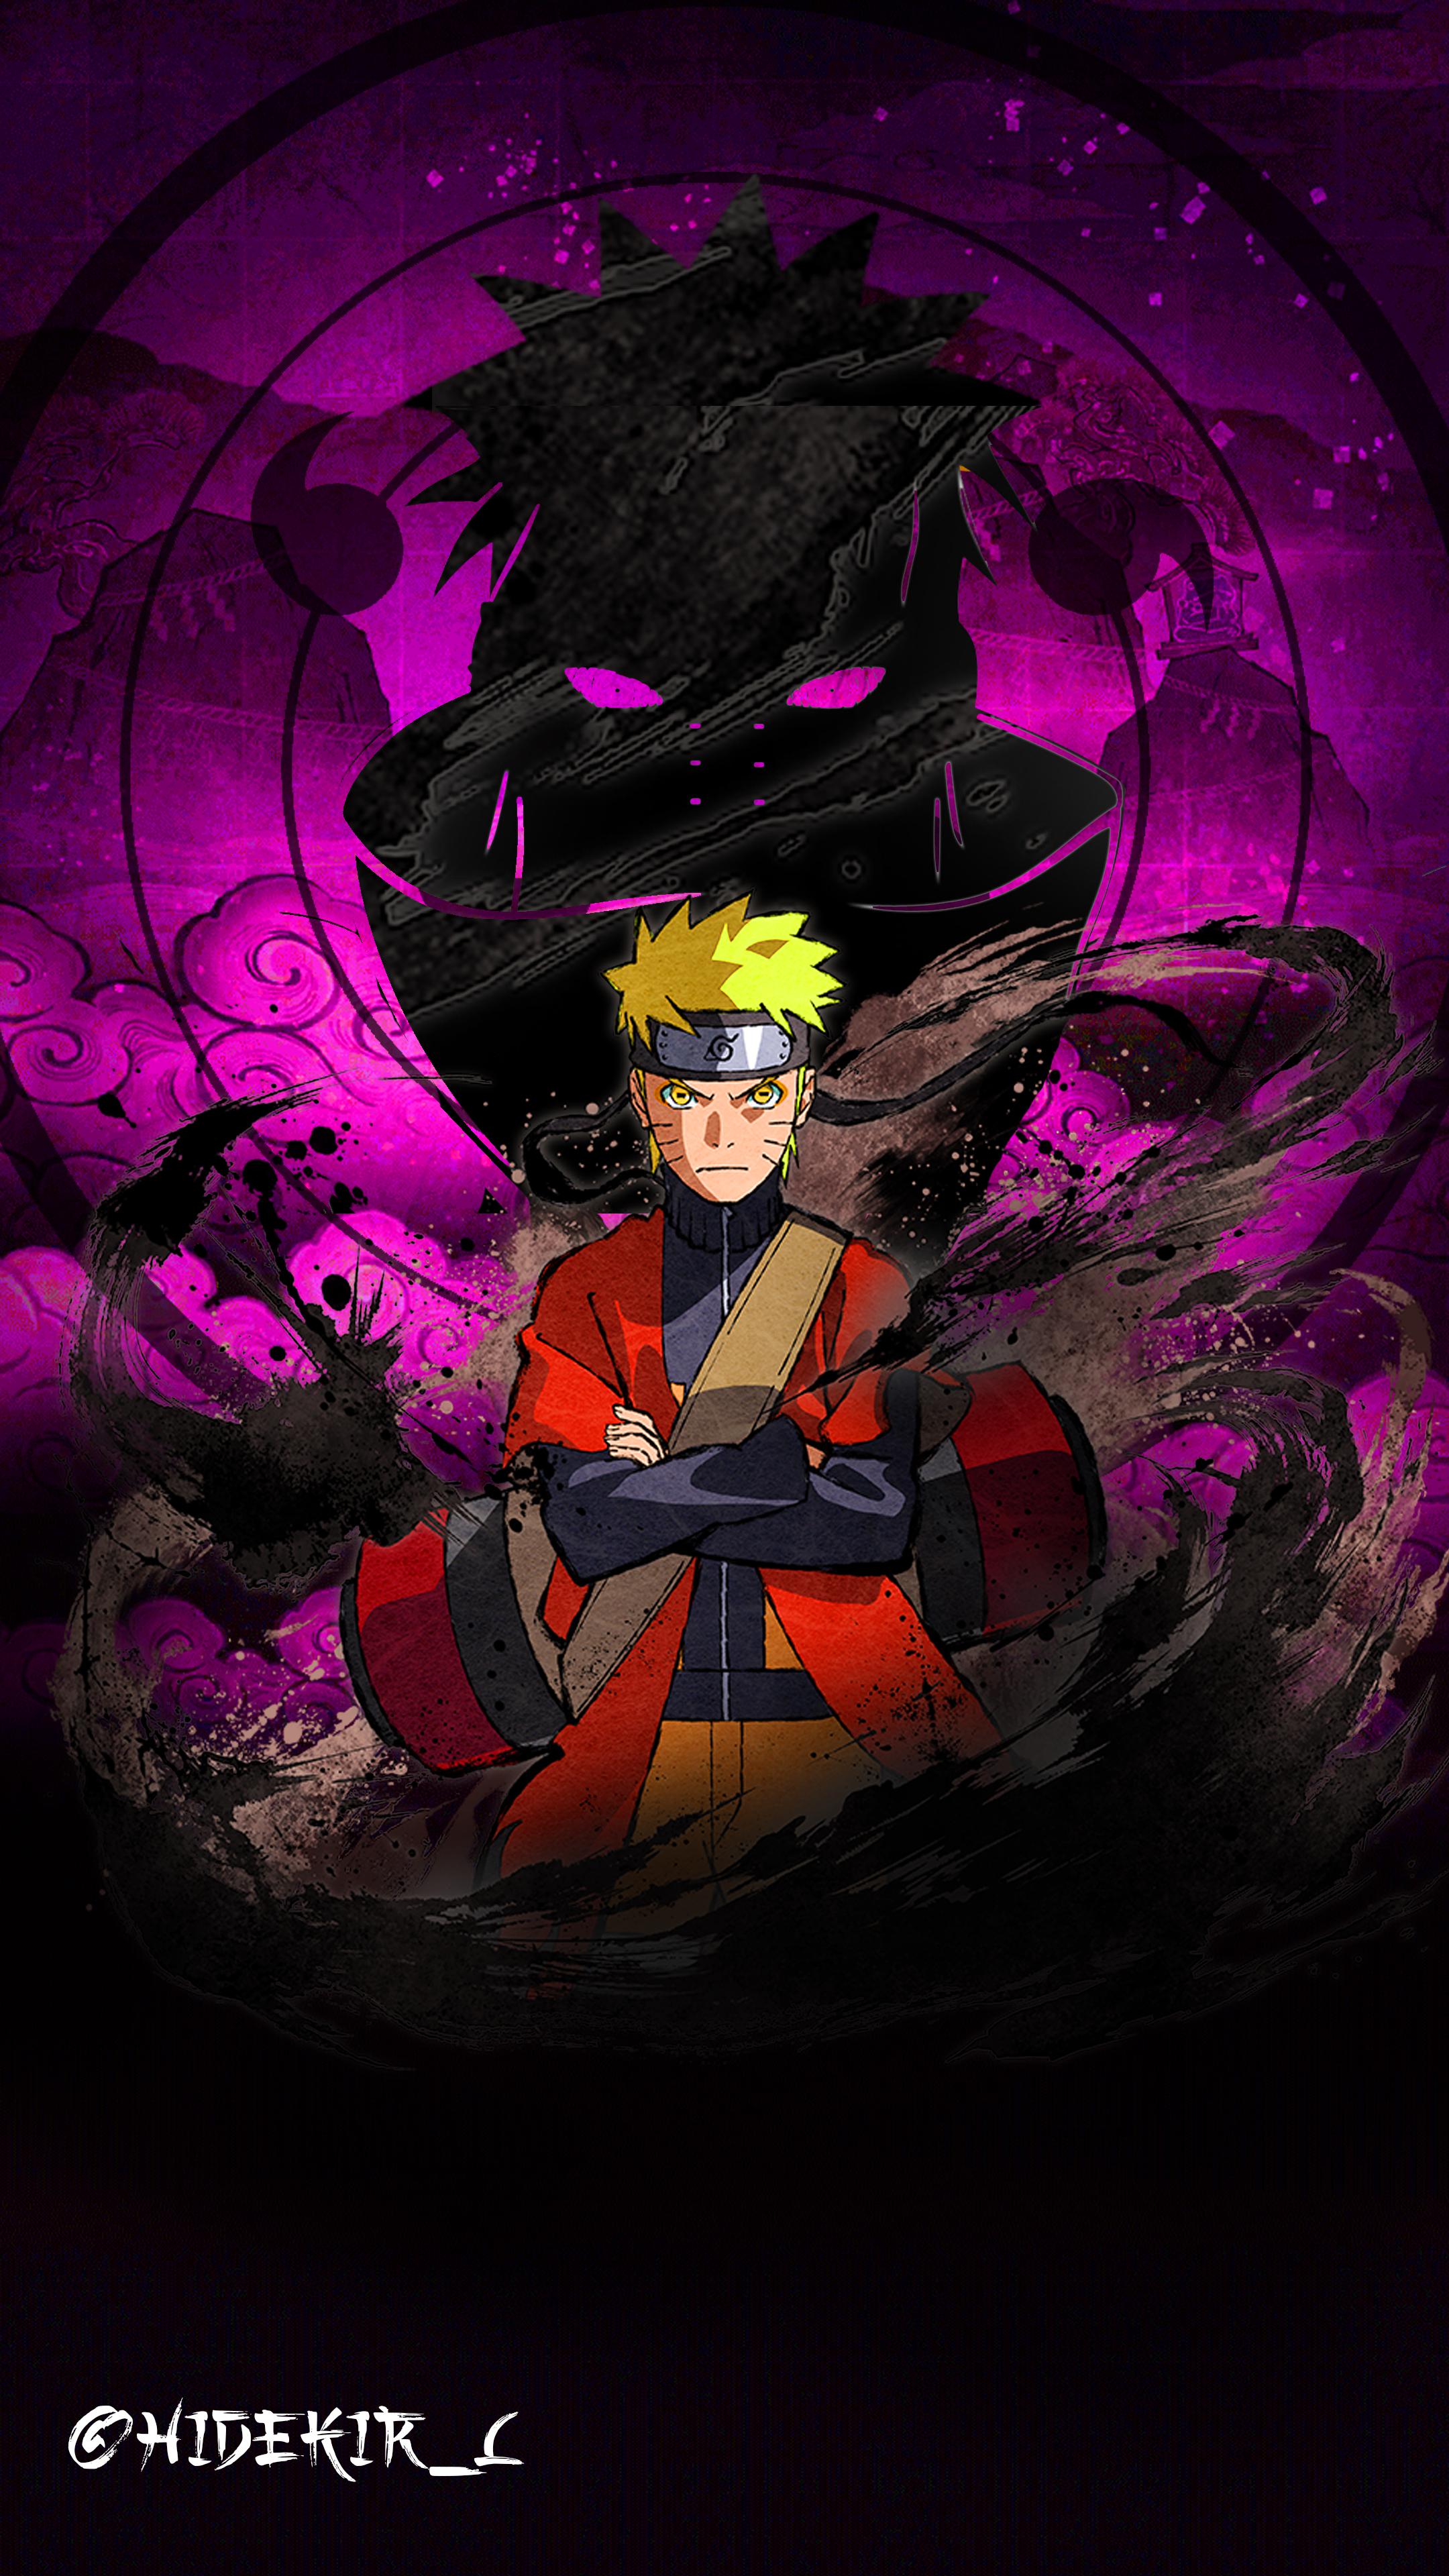 Gambar Wallpaper Naruto Keren gambar ke 1